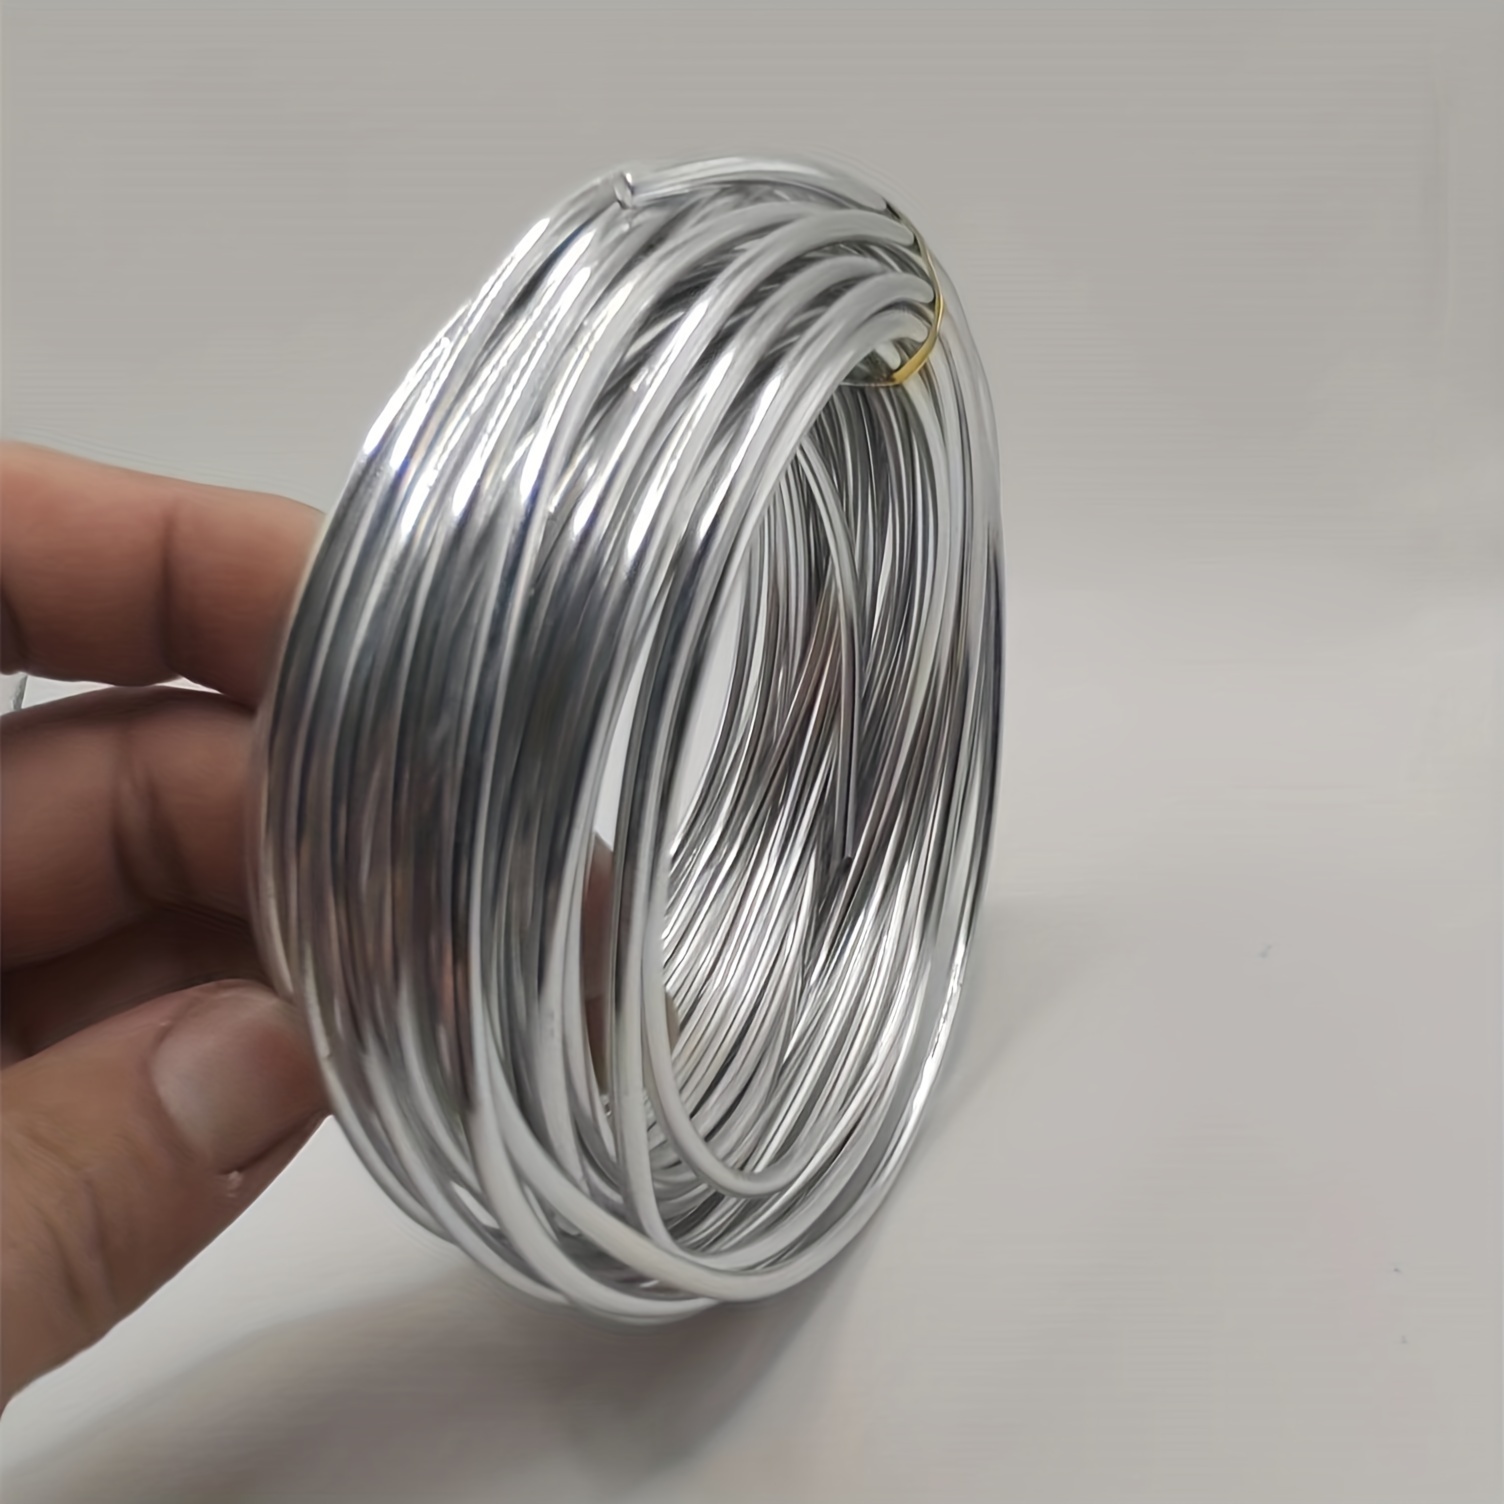 2 rouleaux de fil d'aluminium de 1 mm Fil de fer en métal souple Convient